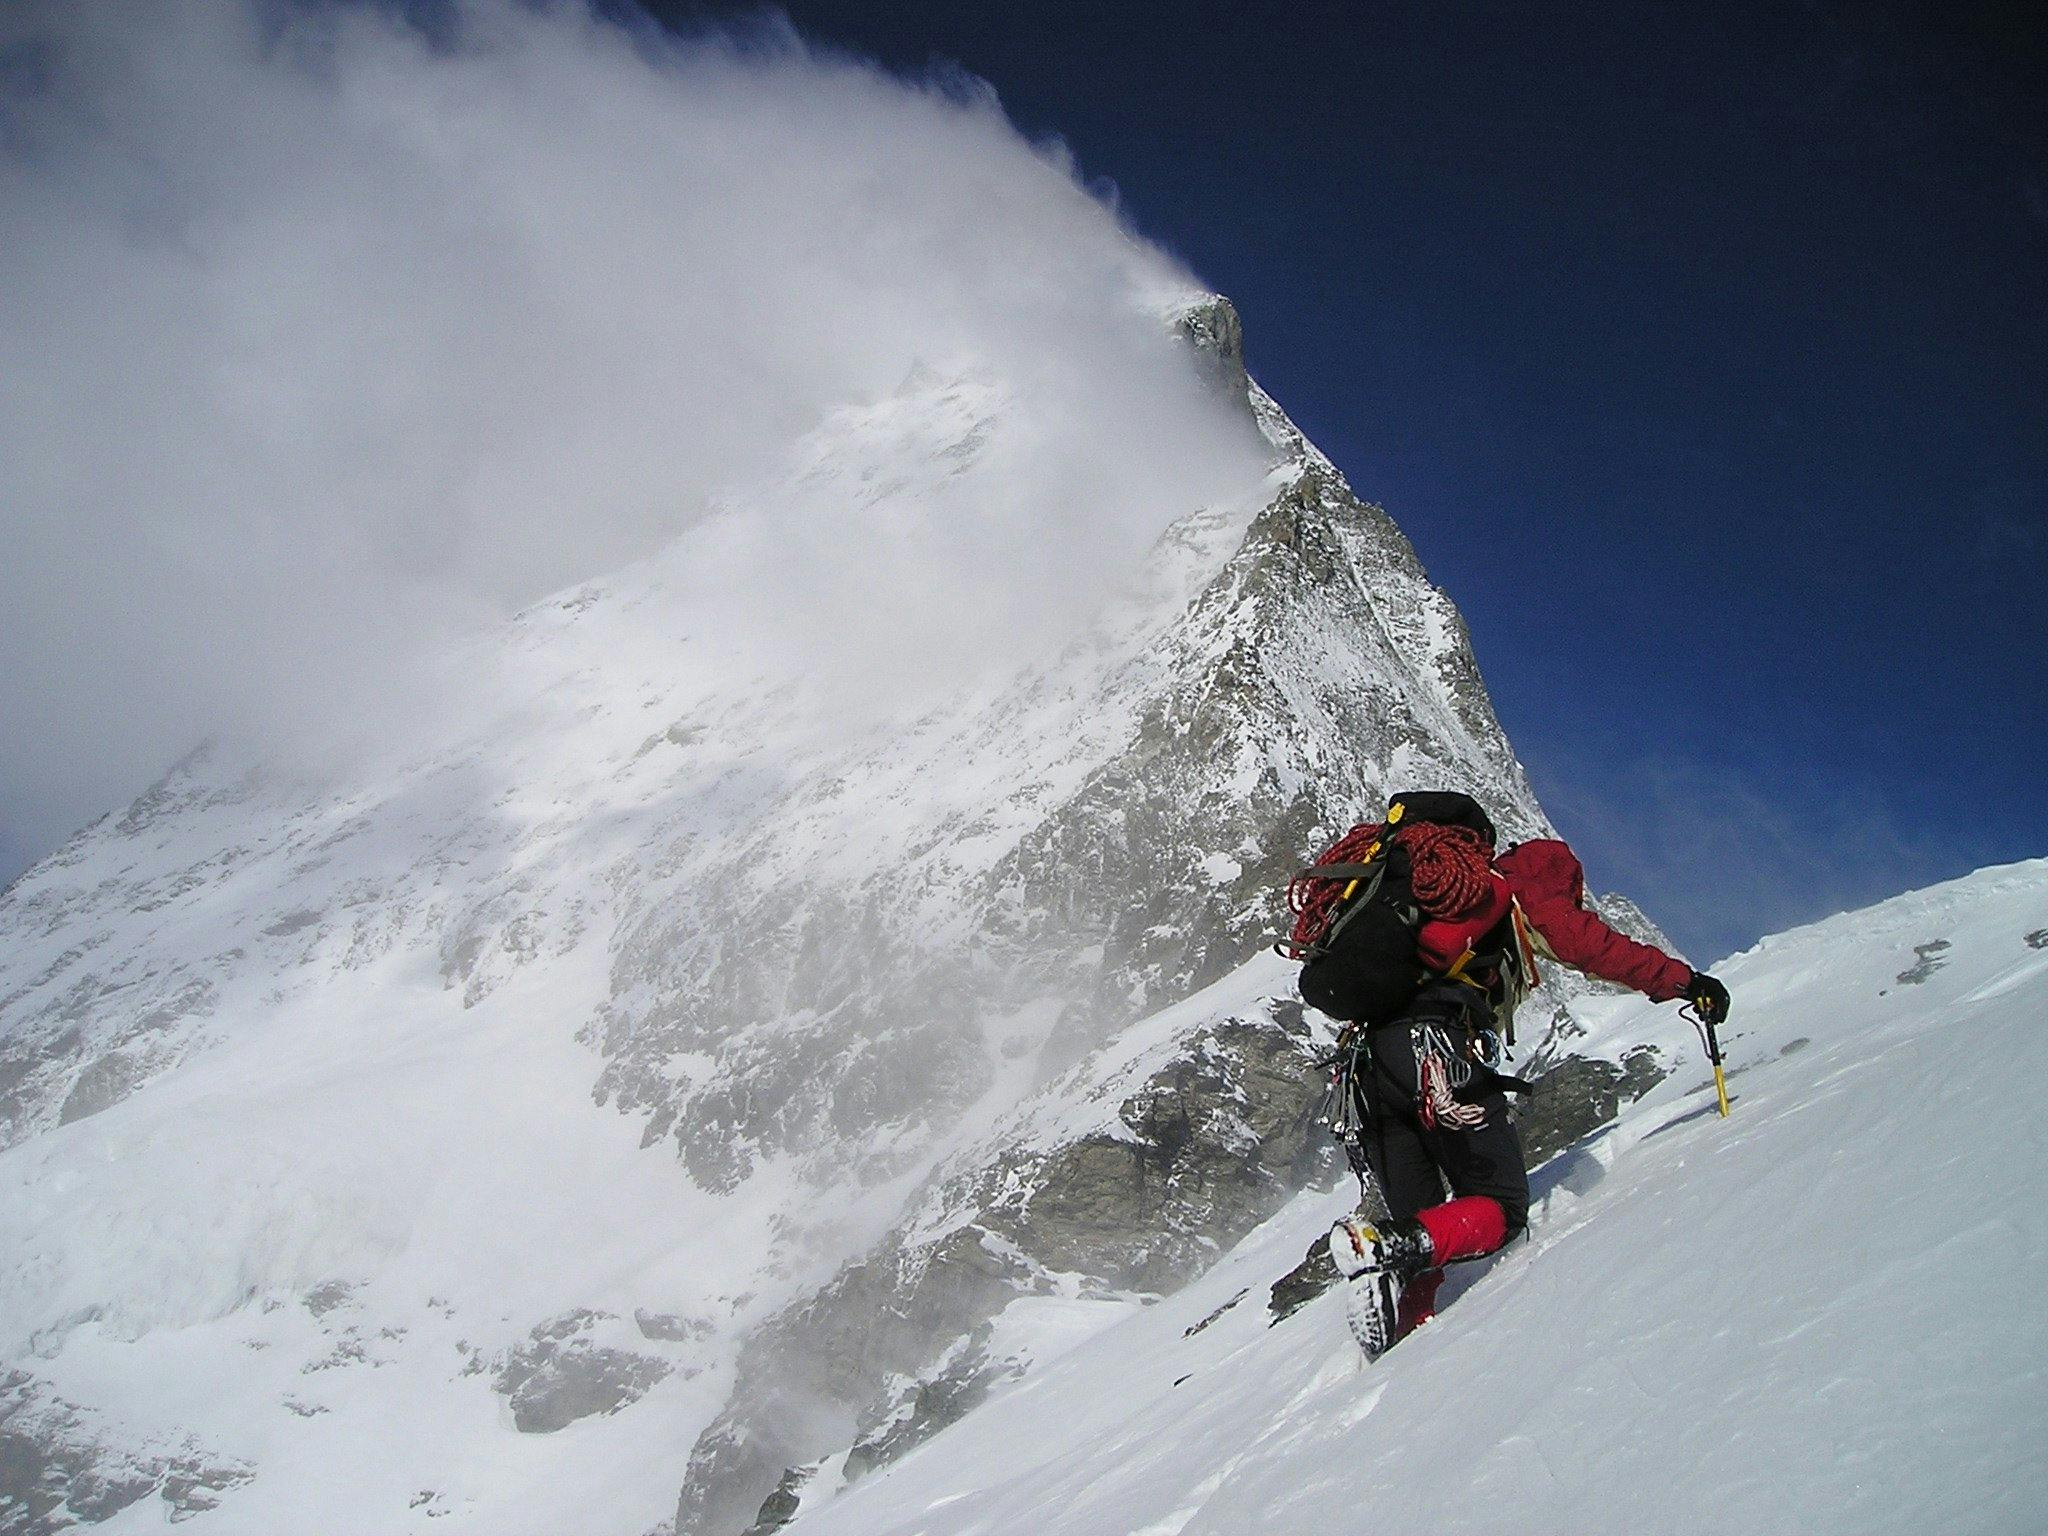 Un alpiniste en tenue rouge et noire escaladant une montagne enneigée avec un piolet, sous un ciel bleu avec des nuages se formant autour du sommet.